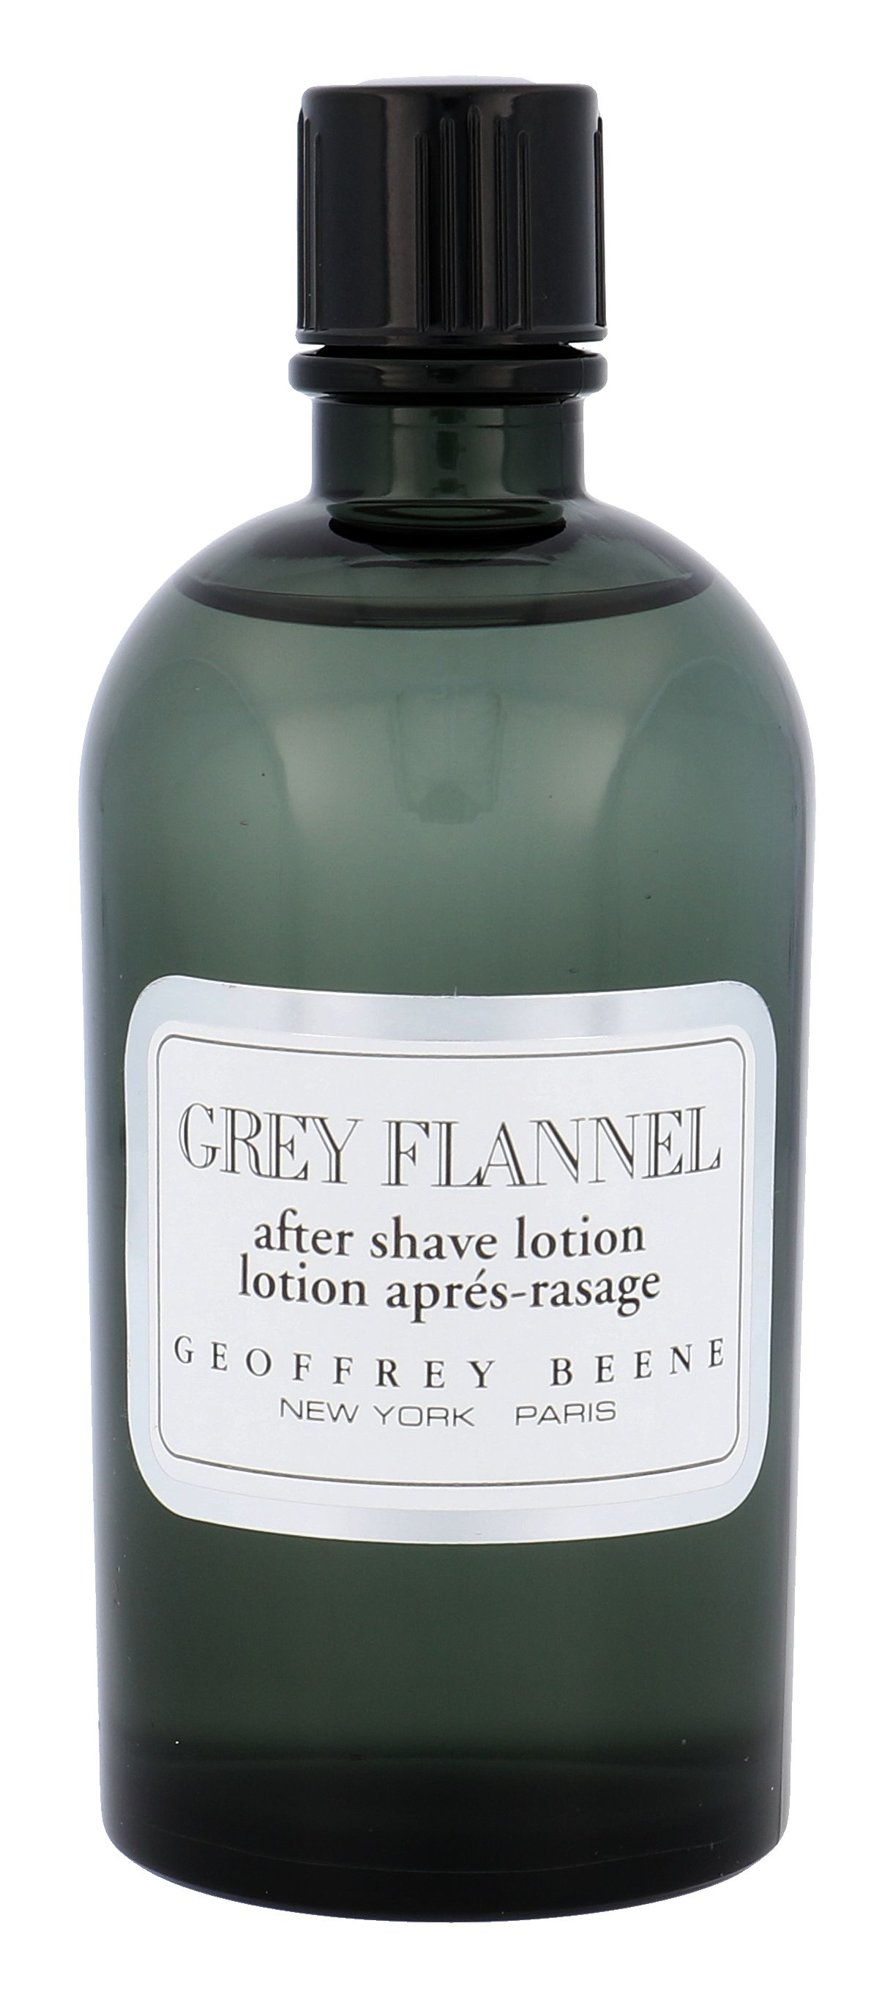 Geoffrey Beene Grey Flannel vanduo po skutimosi